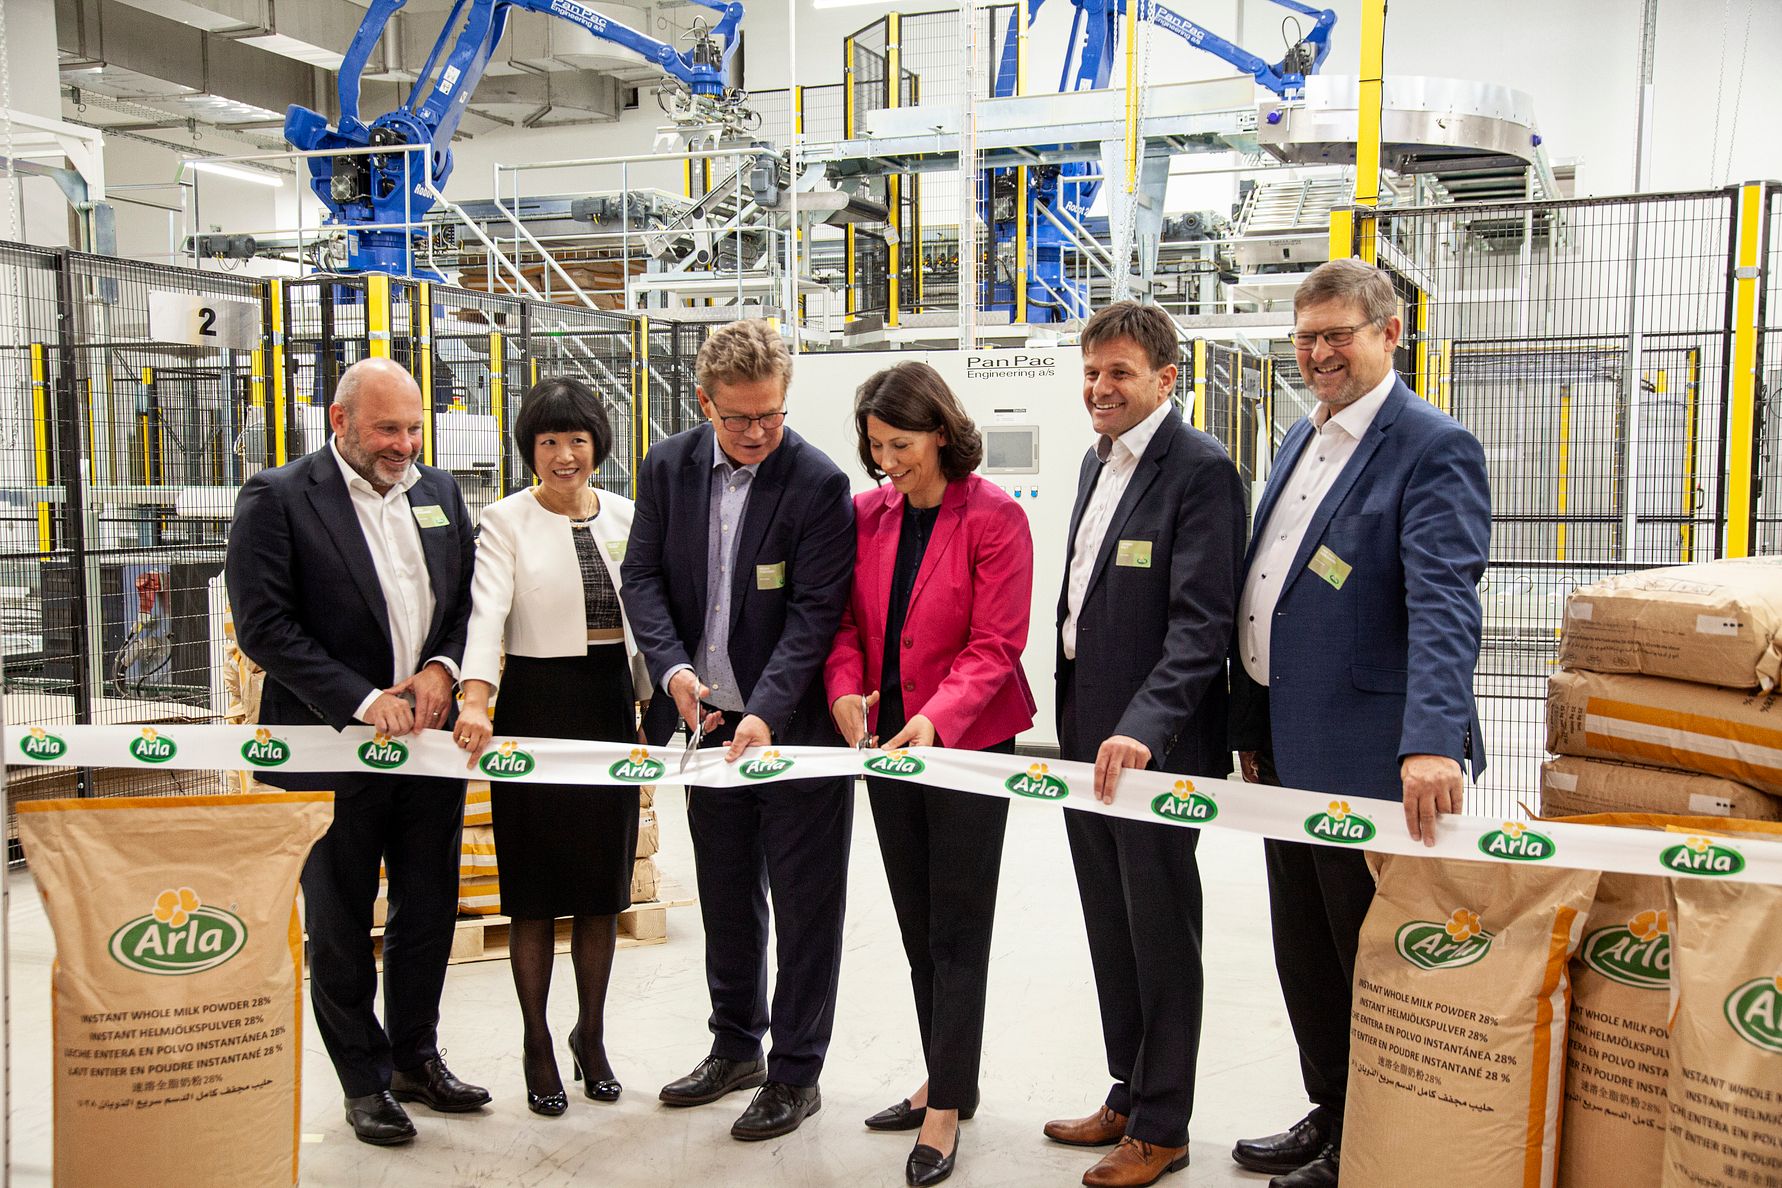 Arla stärkt internationales Geschäft: Neue Produktionsanlage für 190 Millionen Euro eingeweiht